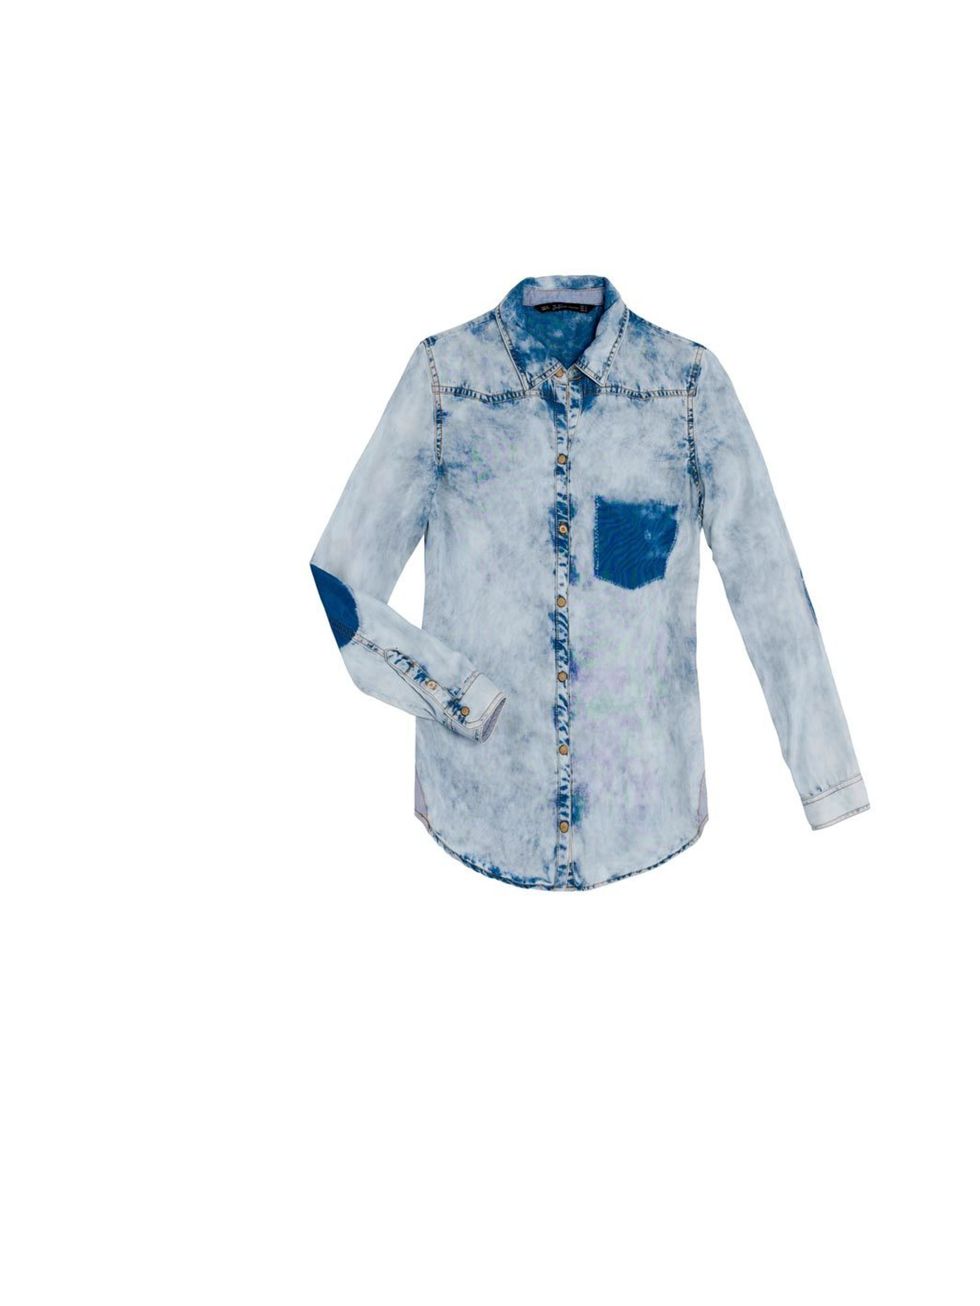 <p>Zara denim shirt, £29.99, for stockists call 0207 534 9500</p>